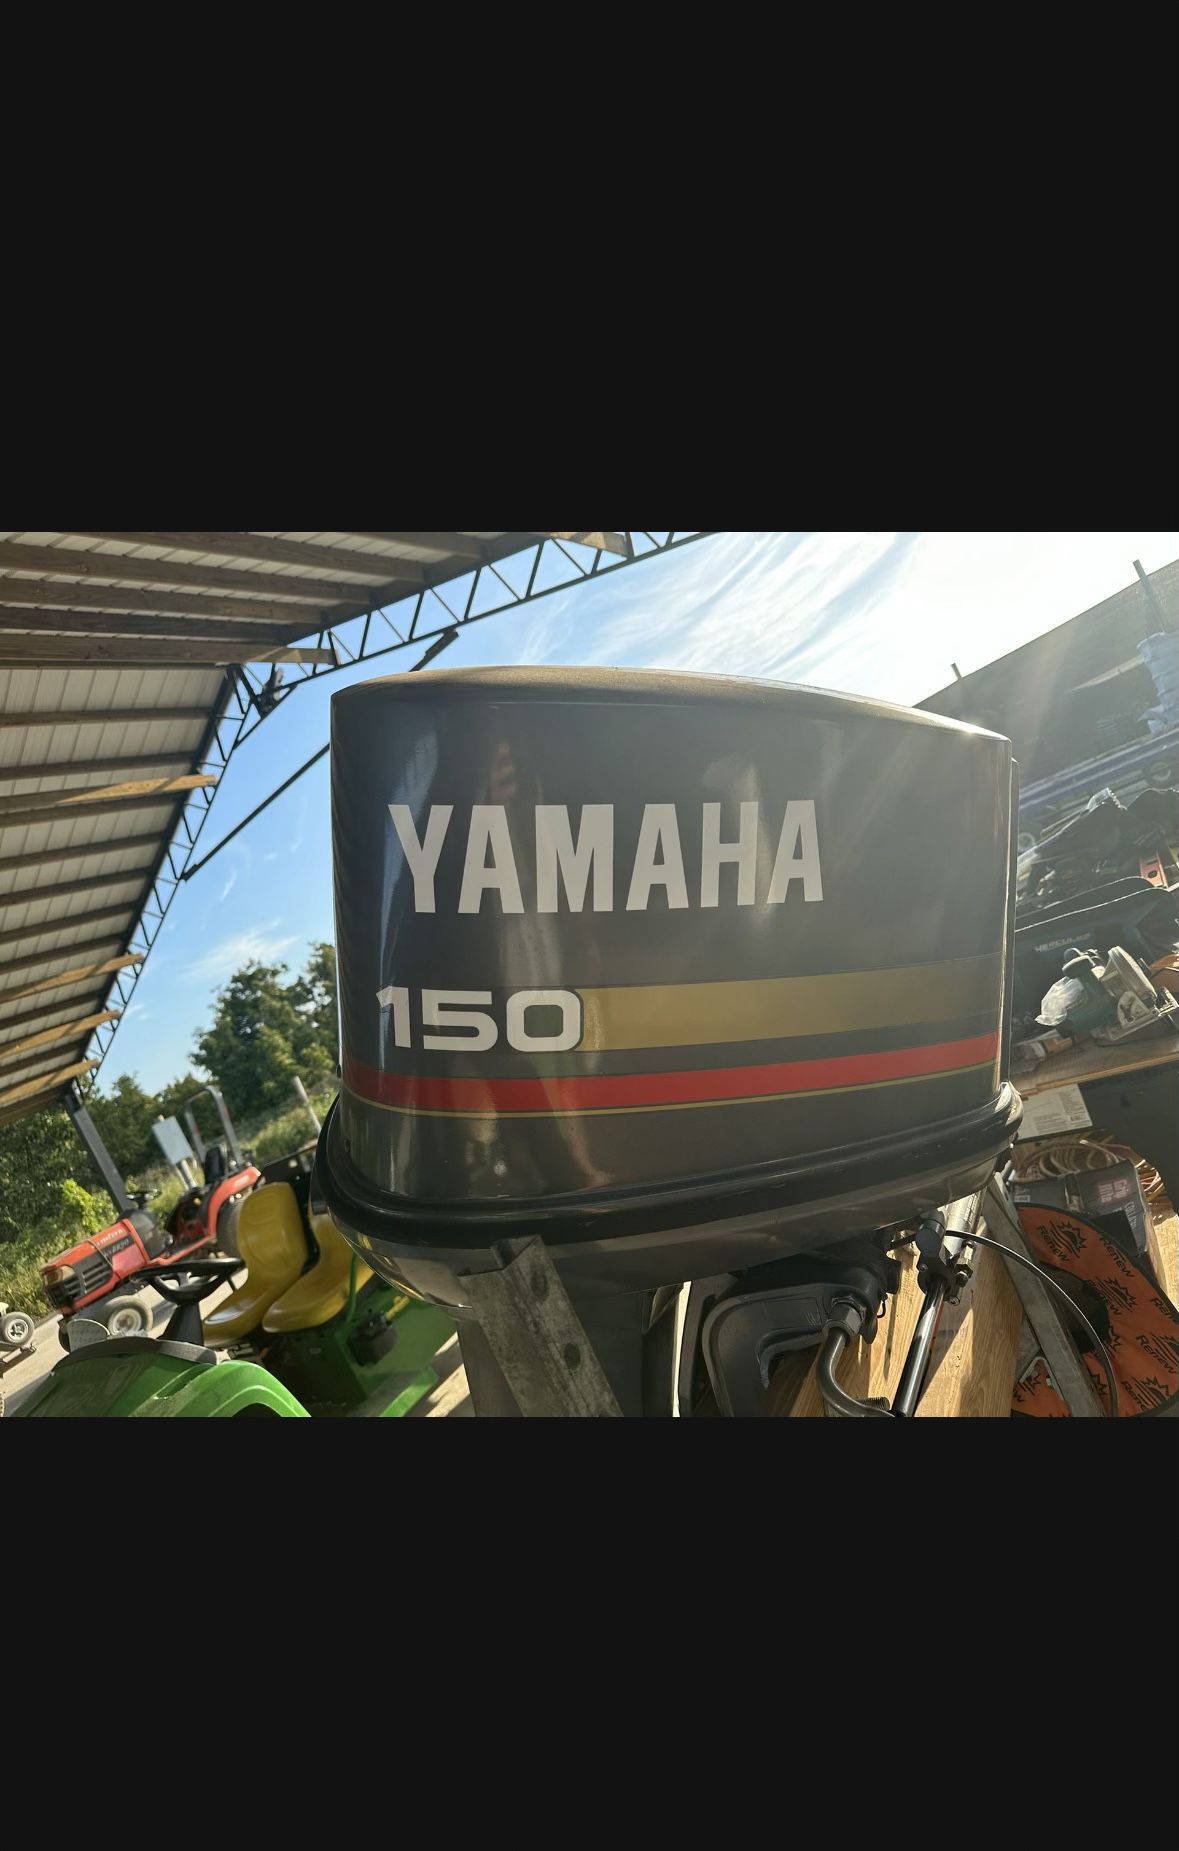 Yamaha 150 - Runs great